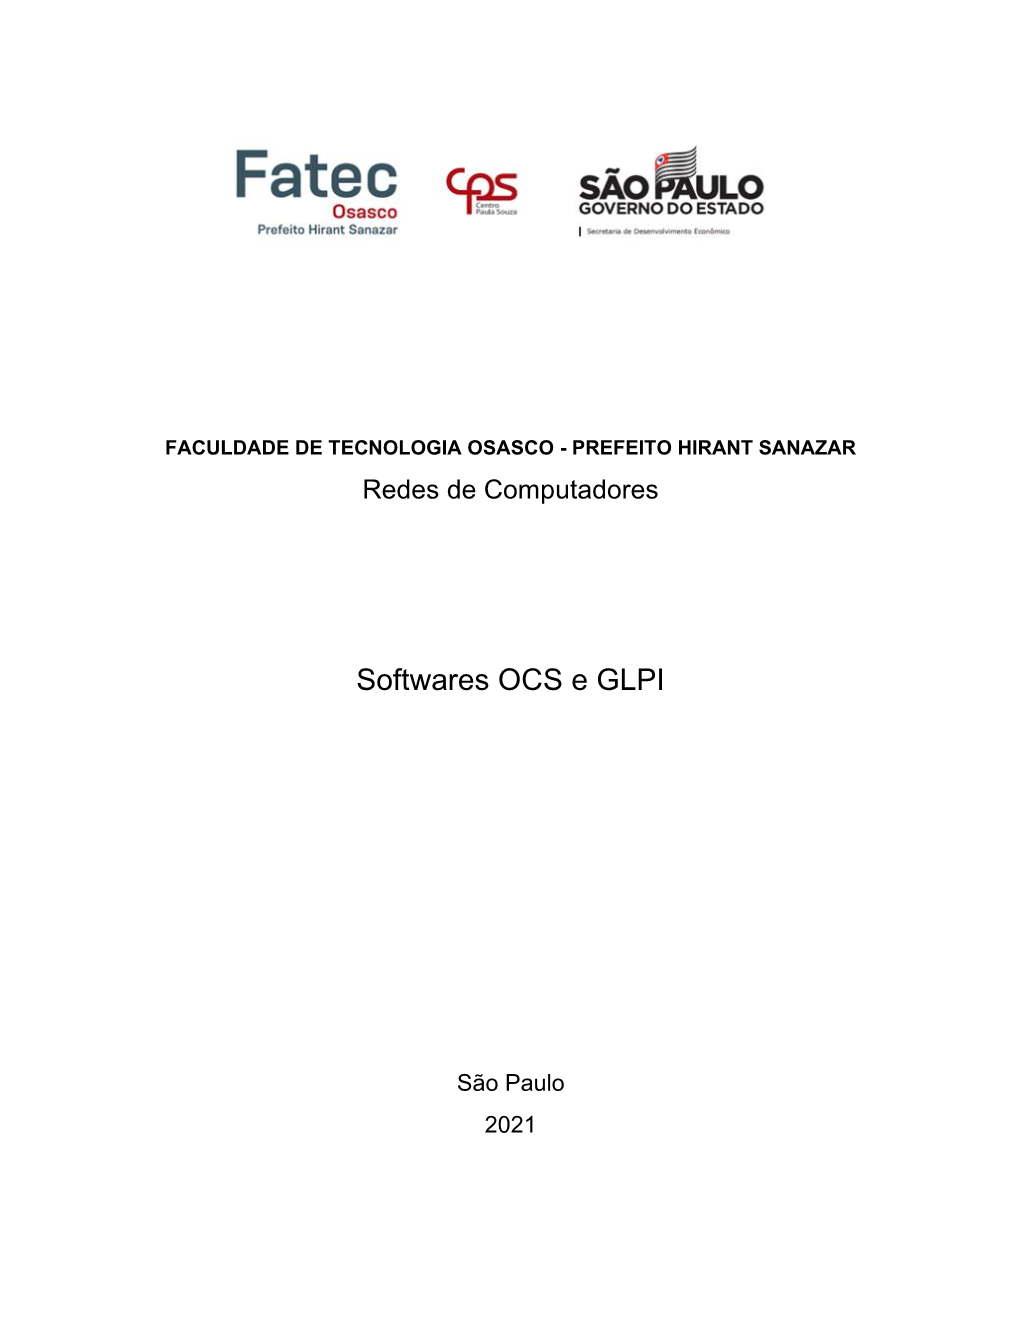 Softwares OCS E GLPI